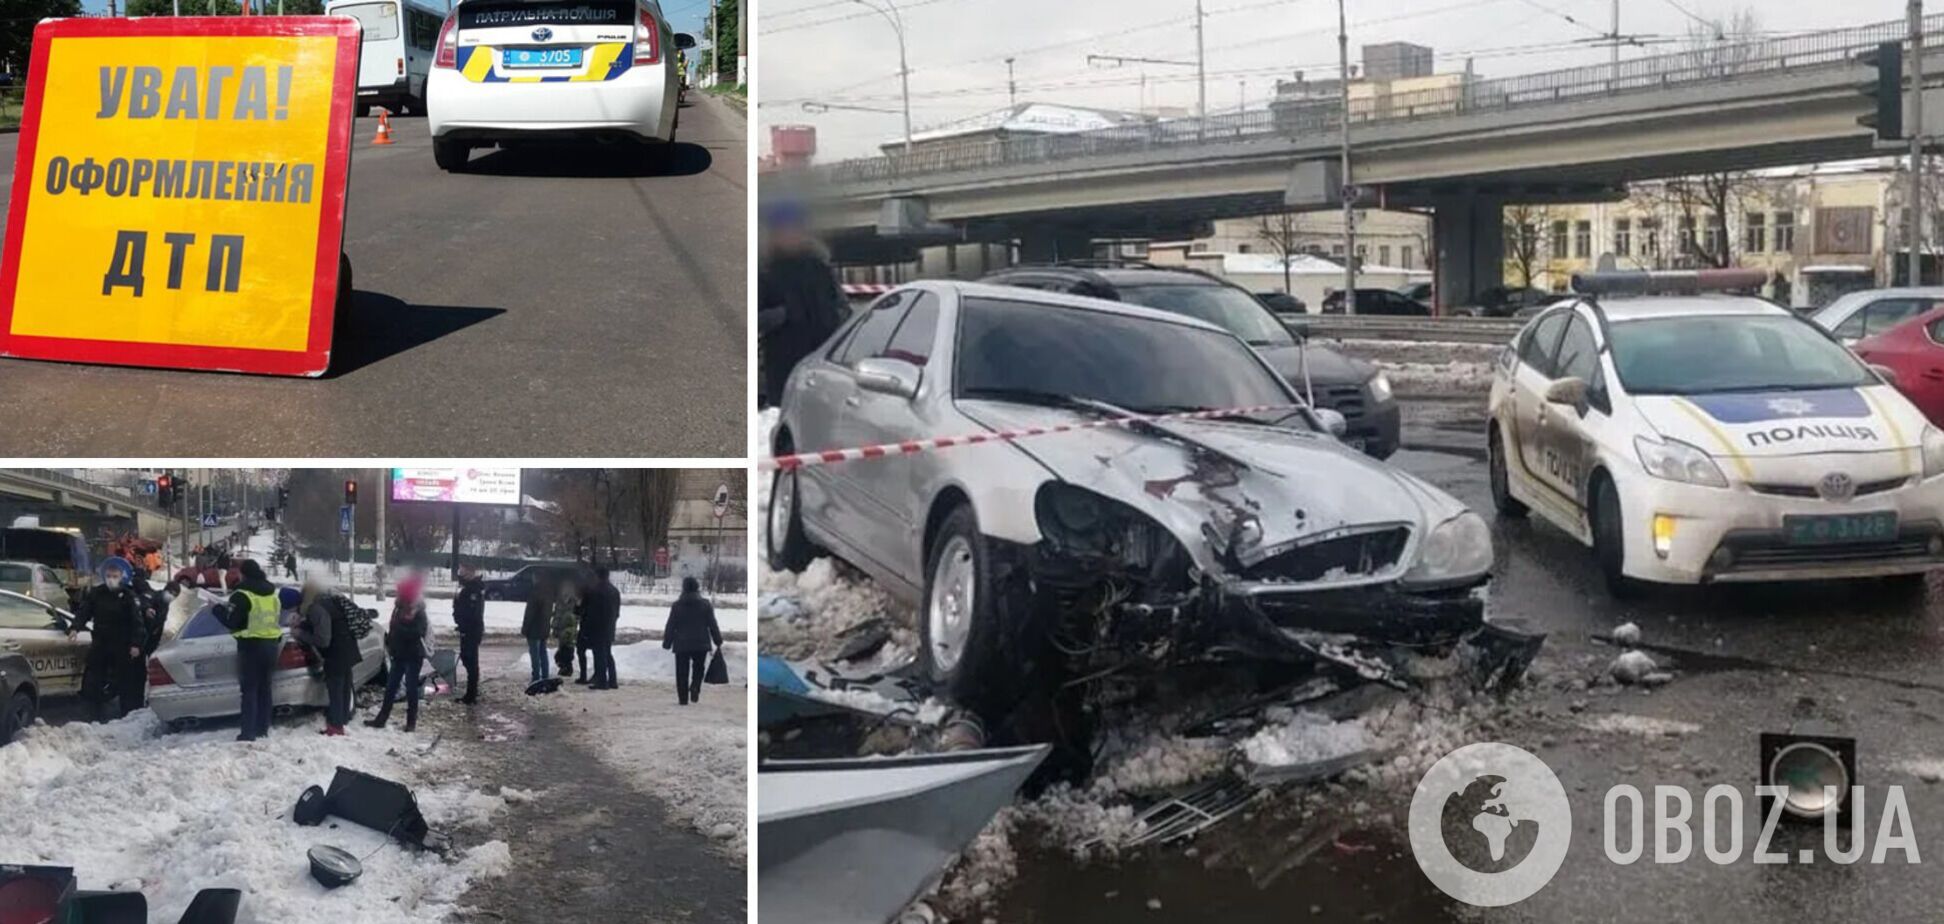 Українці продовжують порушувати правила на дорогах